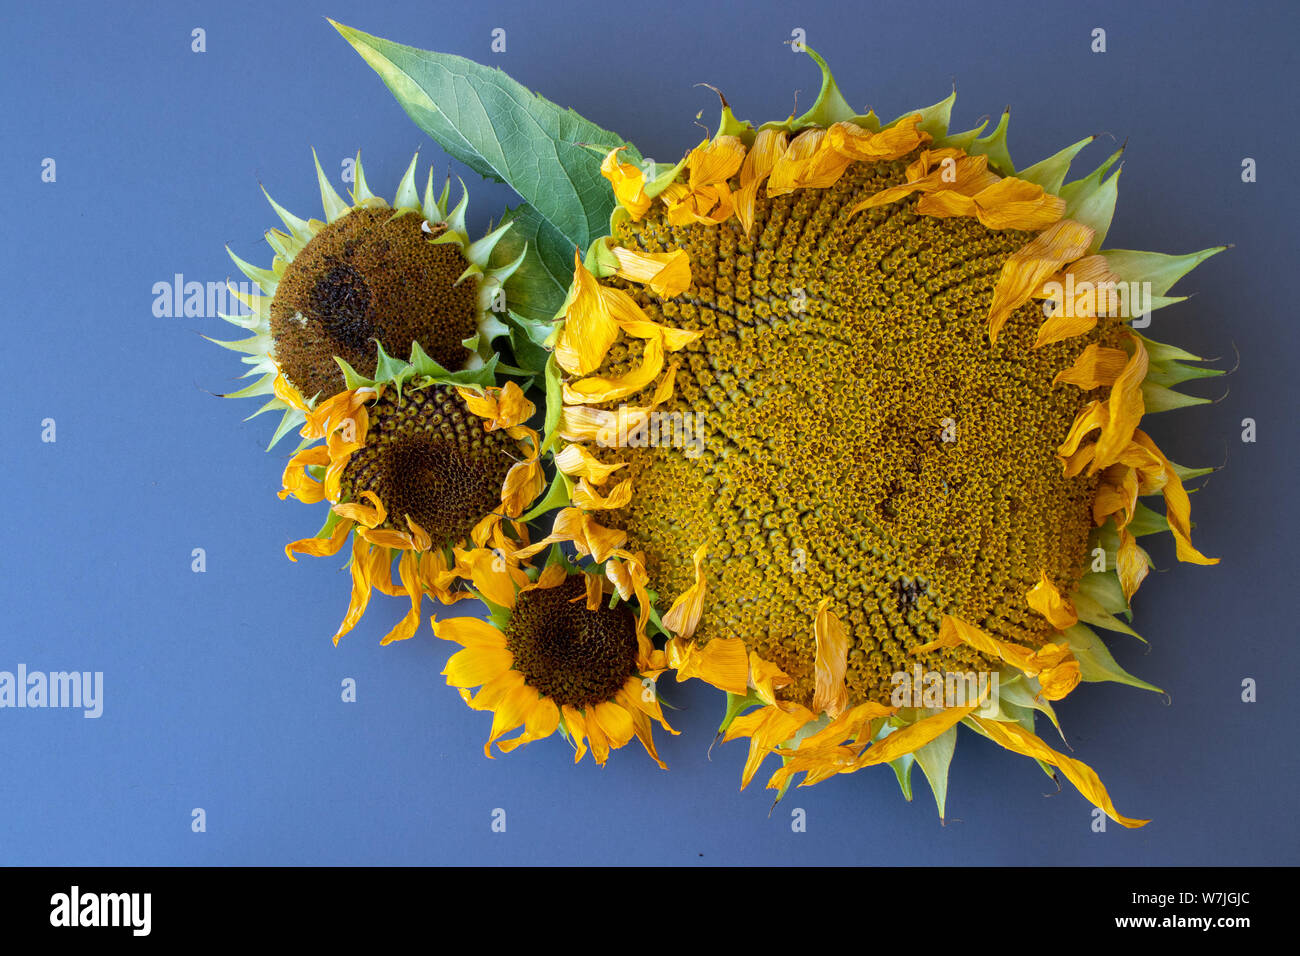 Ein Mammut Sonnenblume neben verschiedenen kleinen am Ende ihrer blühenden Zyklus. Stockfoto